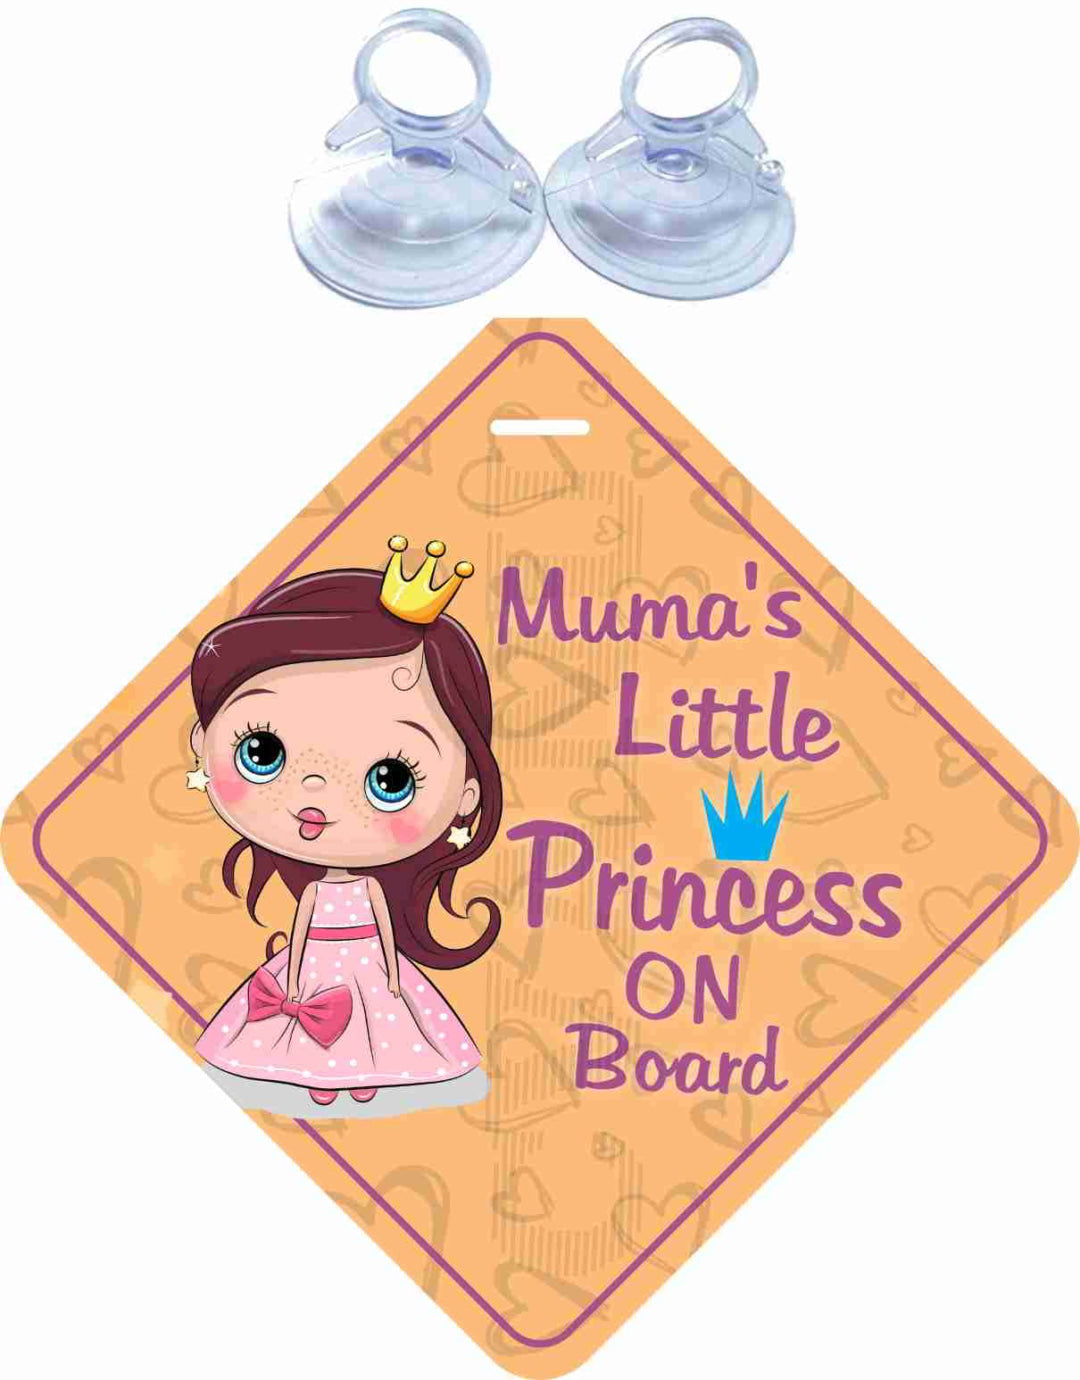 Muma's Little Princess on Board Safety Car Sticker